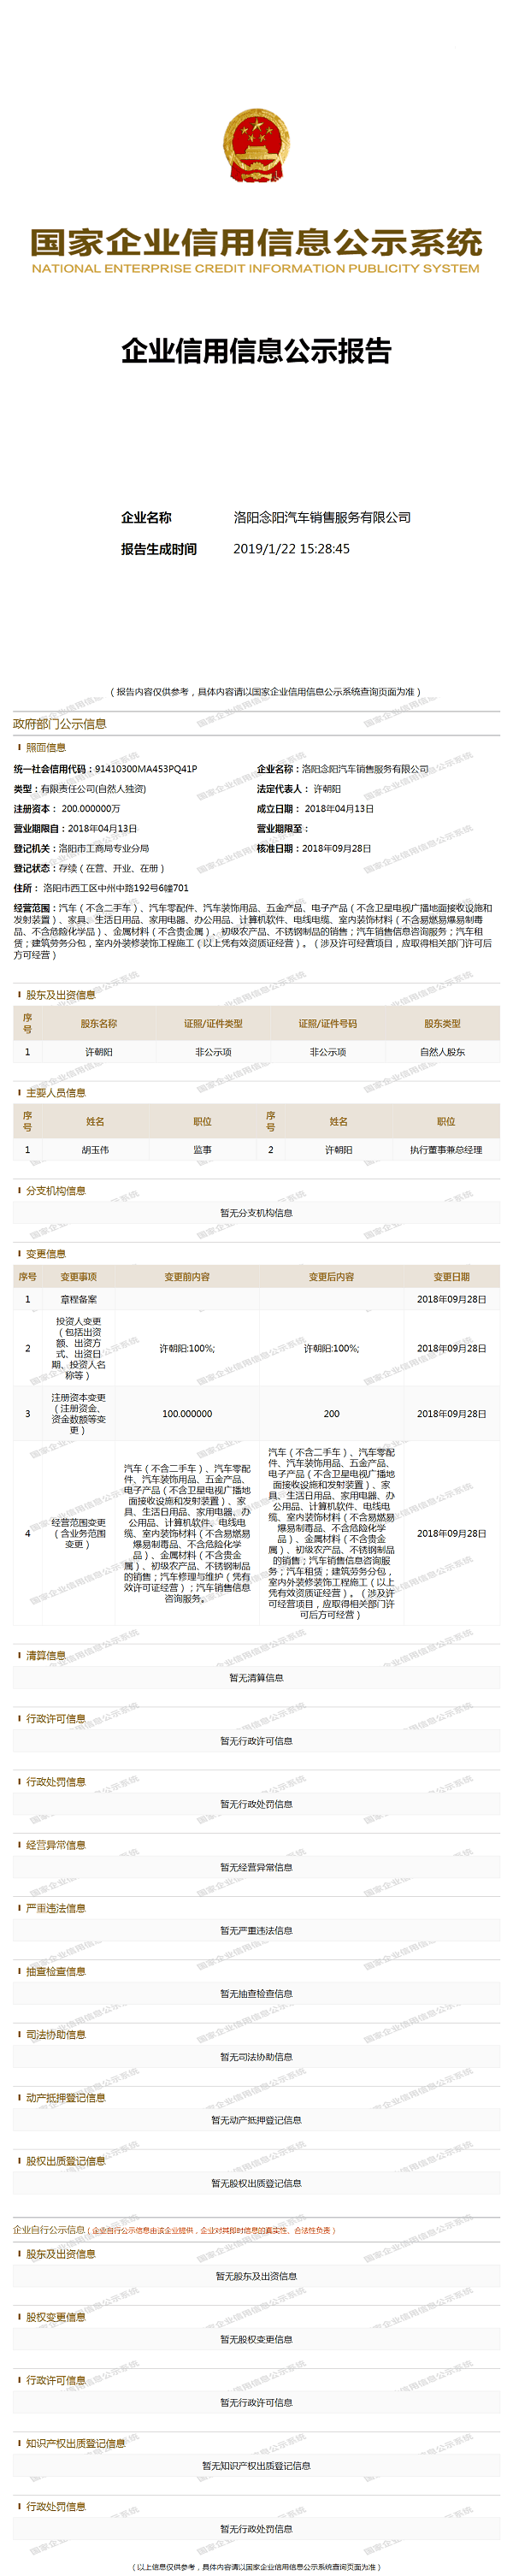 洛阳念阳汽车销售服务有限公司11 (1)